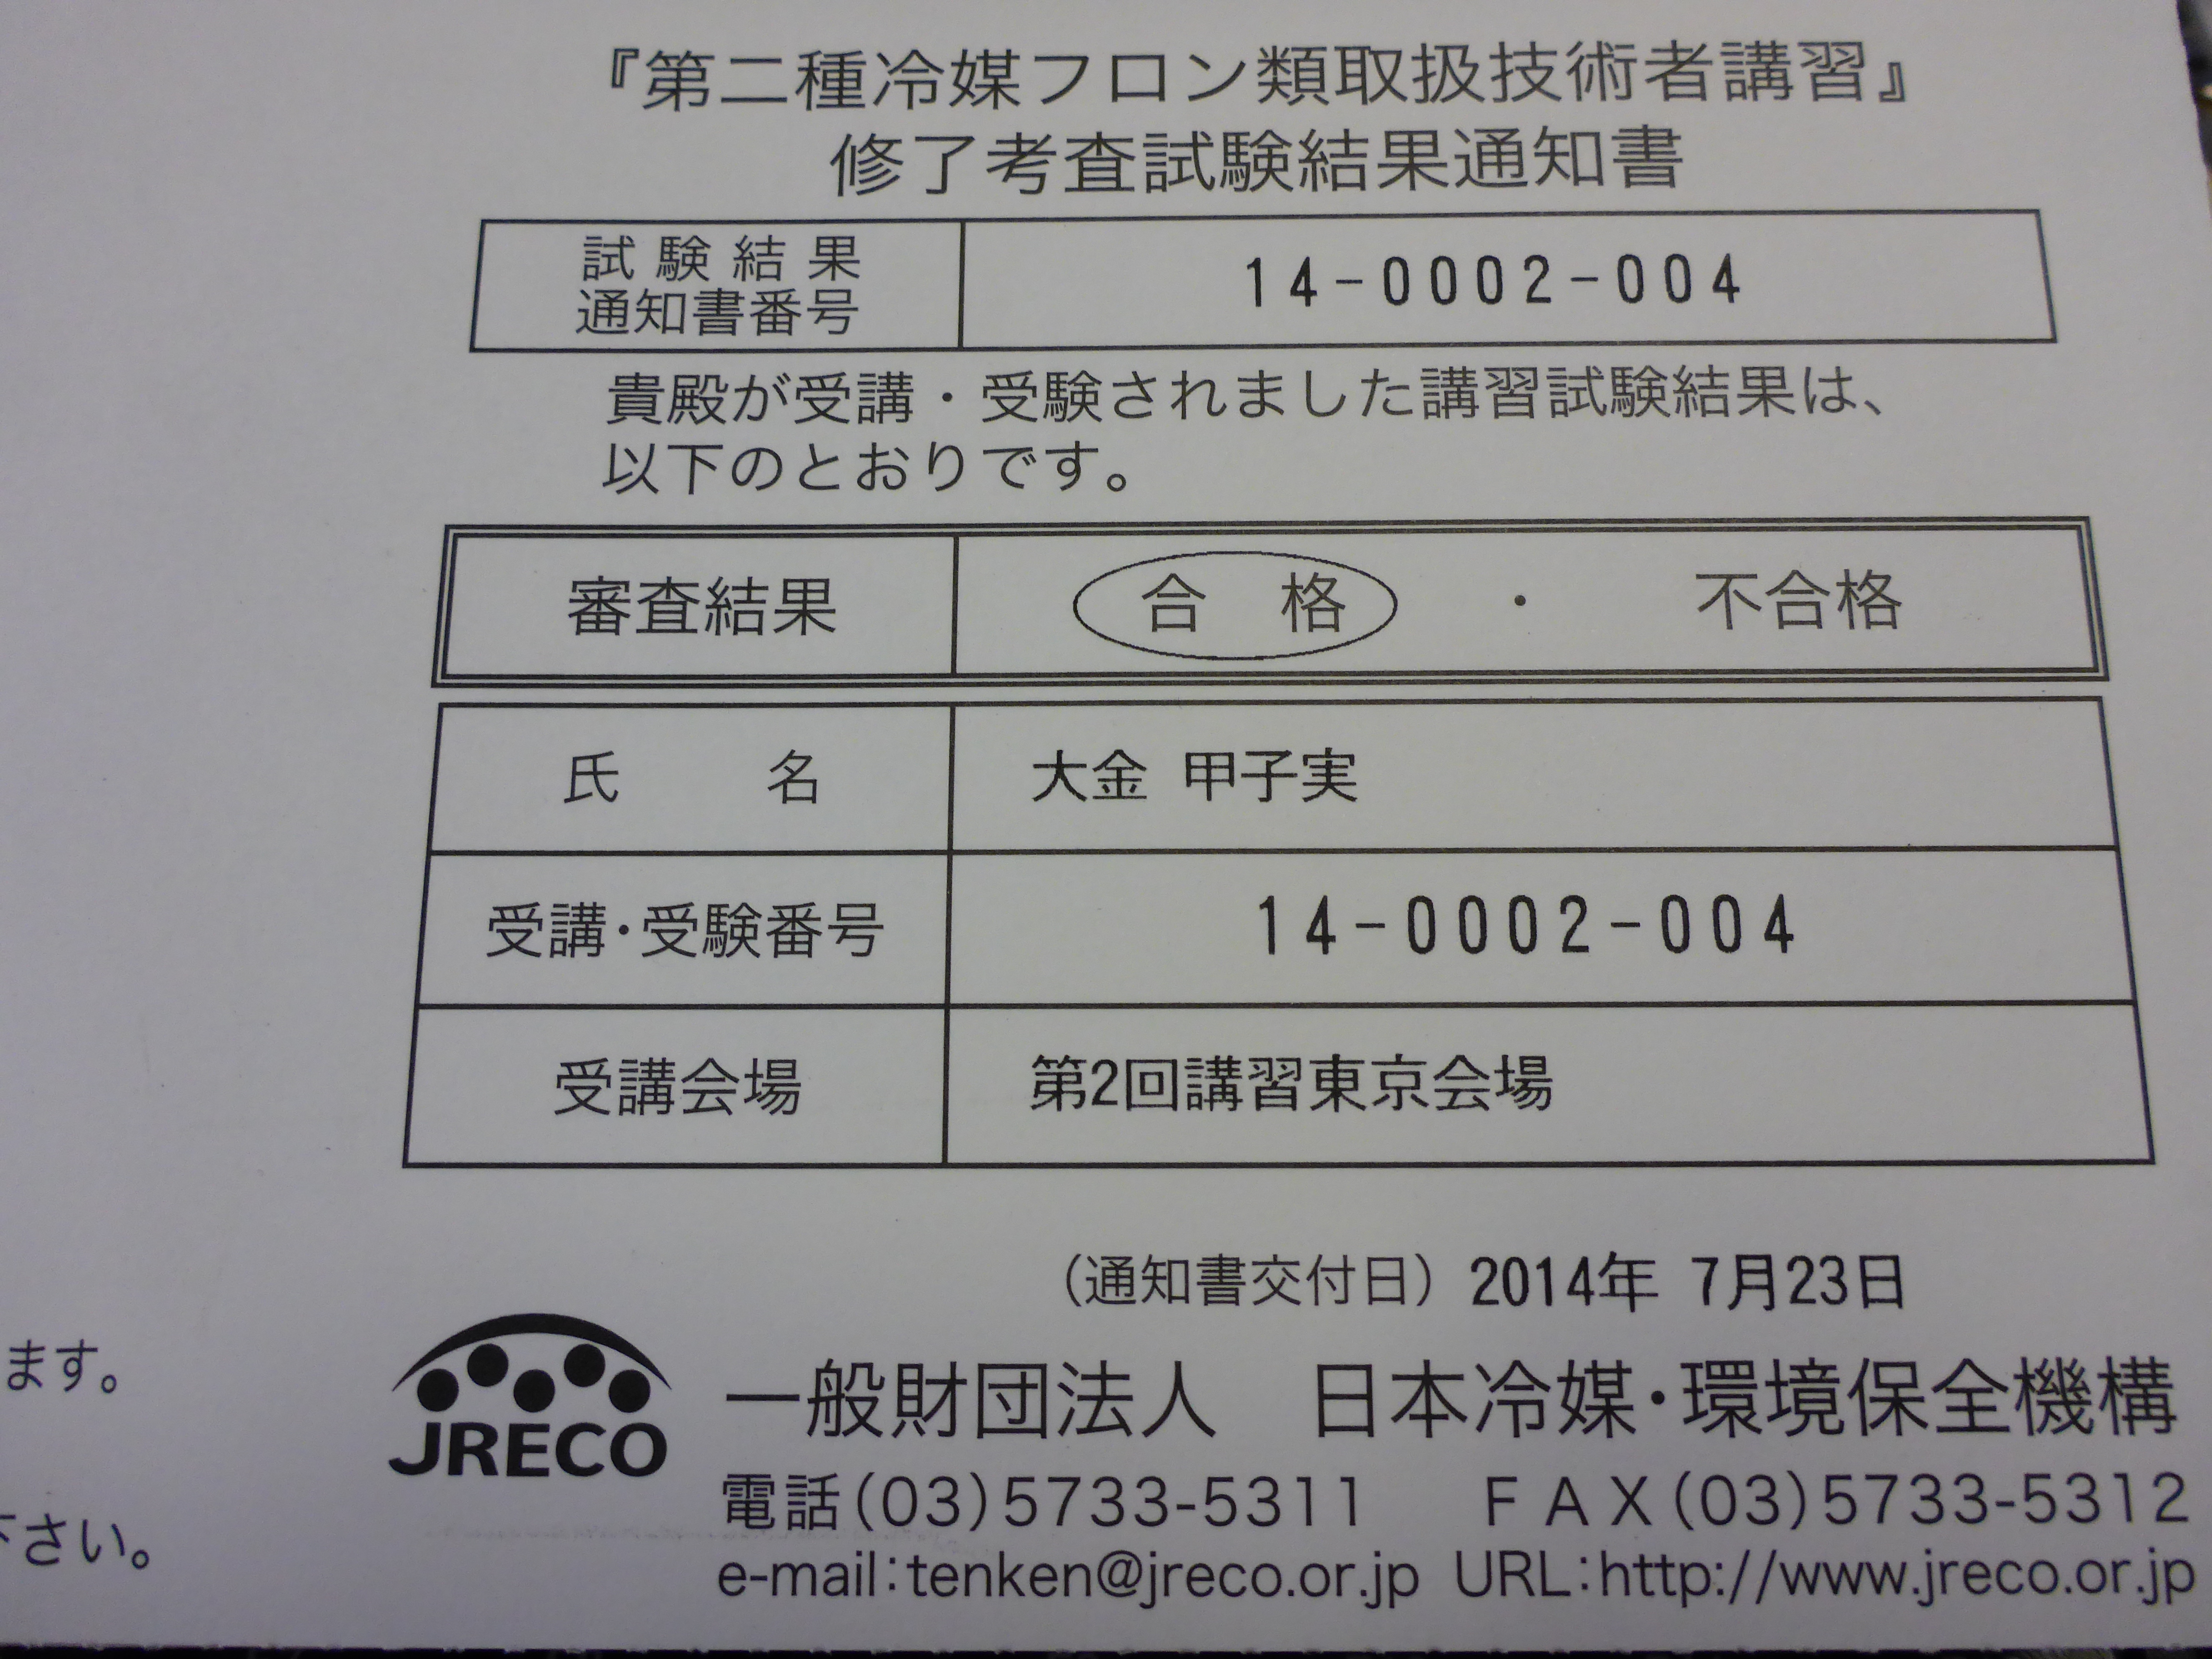 Jrecoからうれしいお知らせが届きました 第二種冷媒フロン類取扱技術者証 株式会社ヒカリ電機